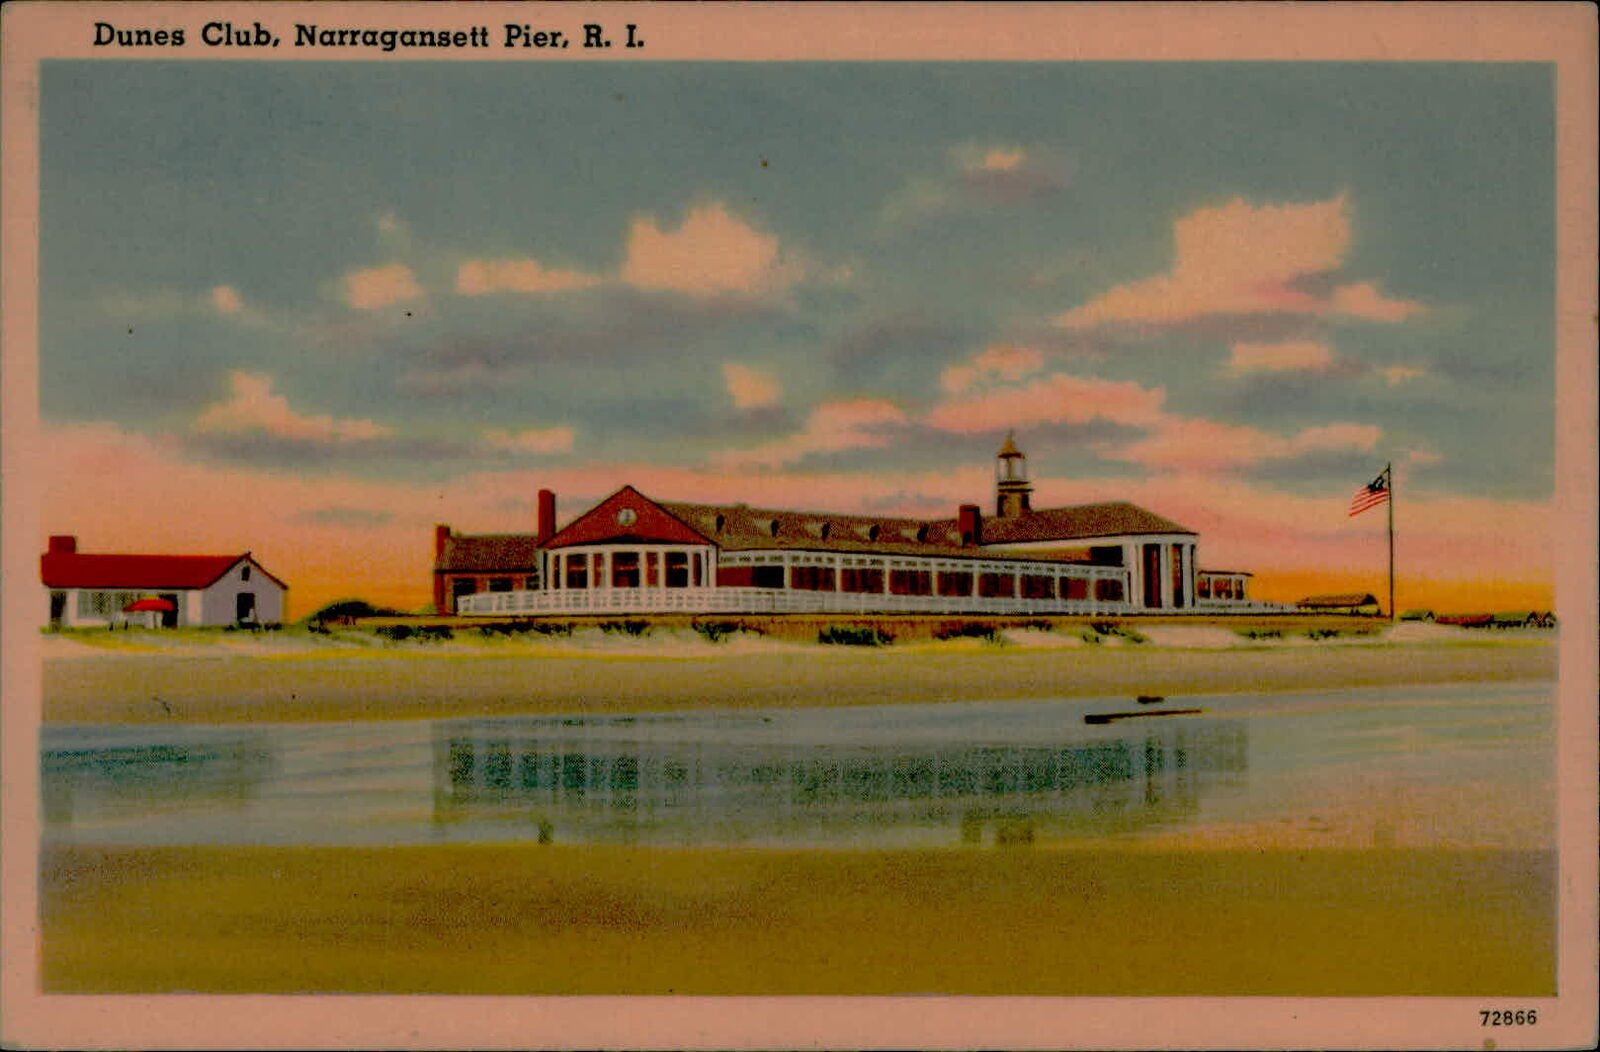 Postcard: Dunes Club, Narragansett Pier, R. I. 72866